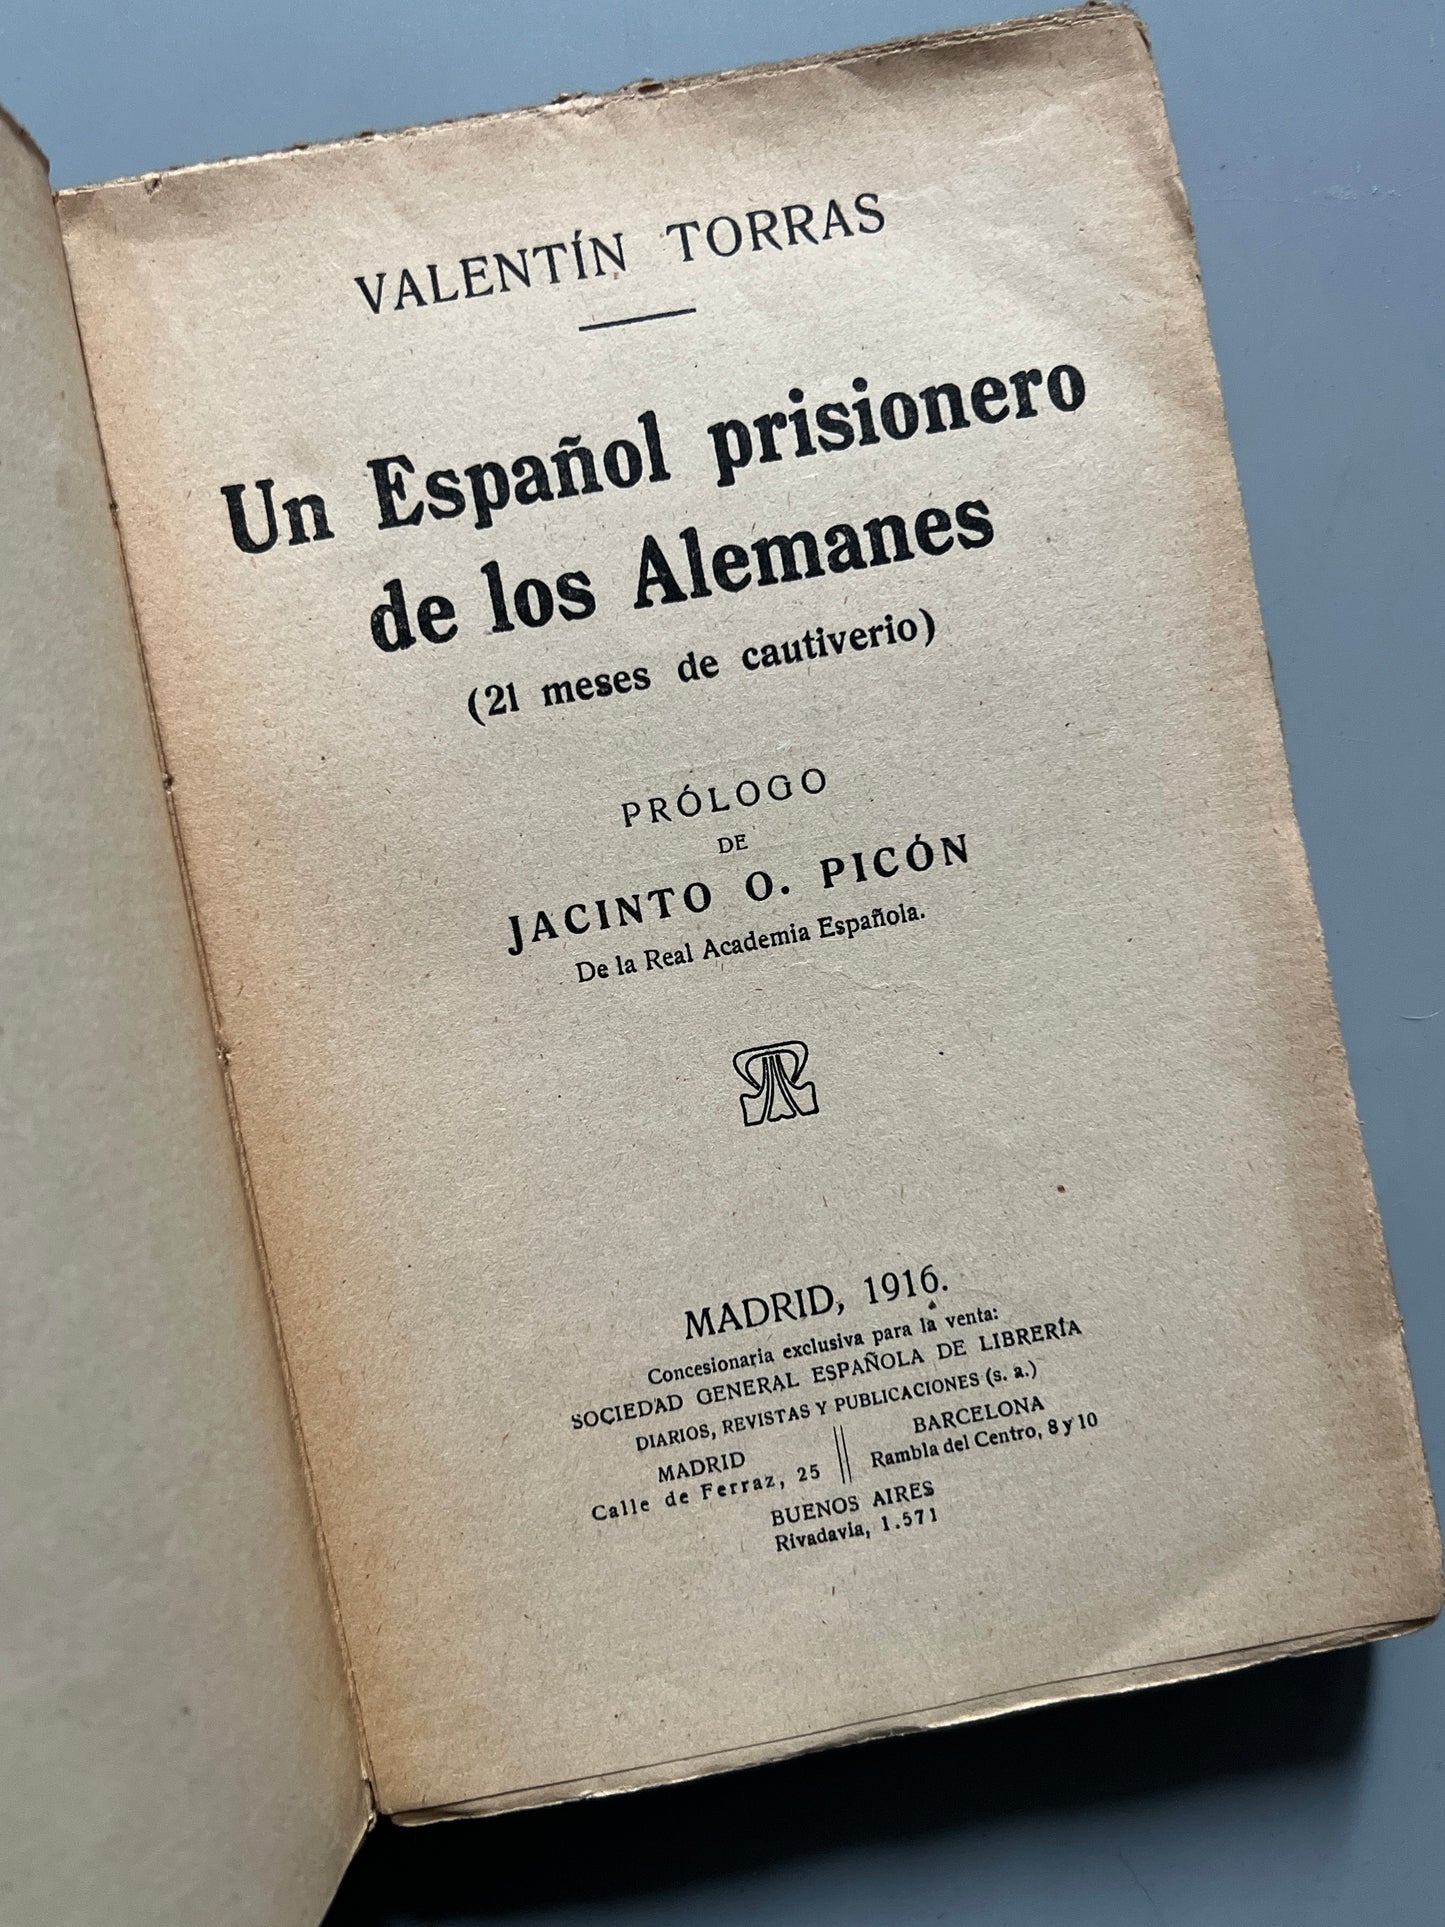 Un español prisionero de los alemanes, Valentín Torras - Madrid, 1916